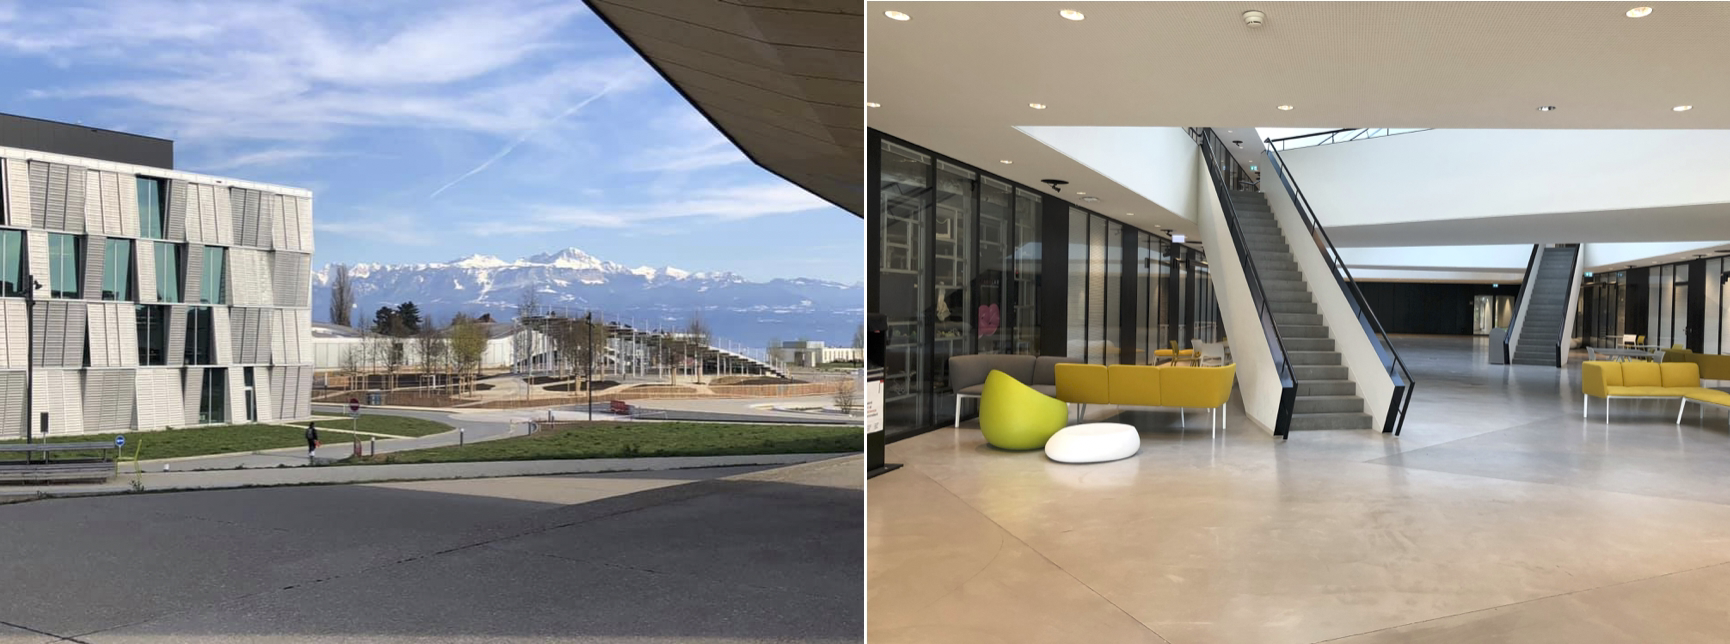 図1: (左) キャンパスから望むスイスアルプス。ローザンヌはレマン湖に面したフランス語圏の街。左側のメタリックな建物の１階に研究室があった。正面の波打った建物はロレックスセンターとよばれ、図書館が中にある。   (右) 研究室がある建物内部。オサレ。左手に見えるのが私がいた研究室。隣に寿司屋があってよくいじられた。